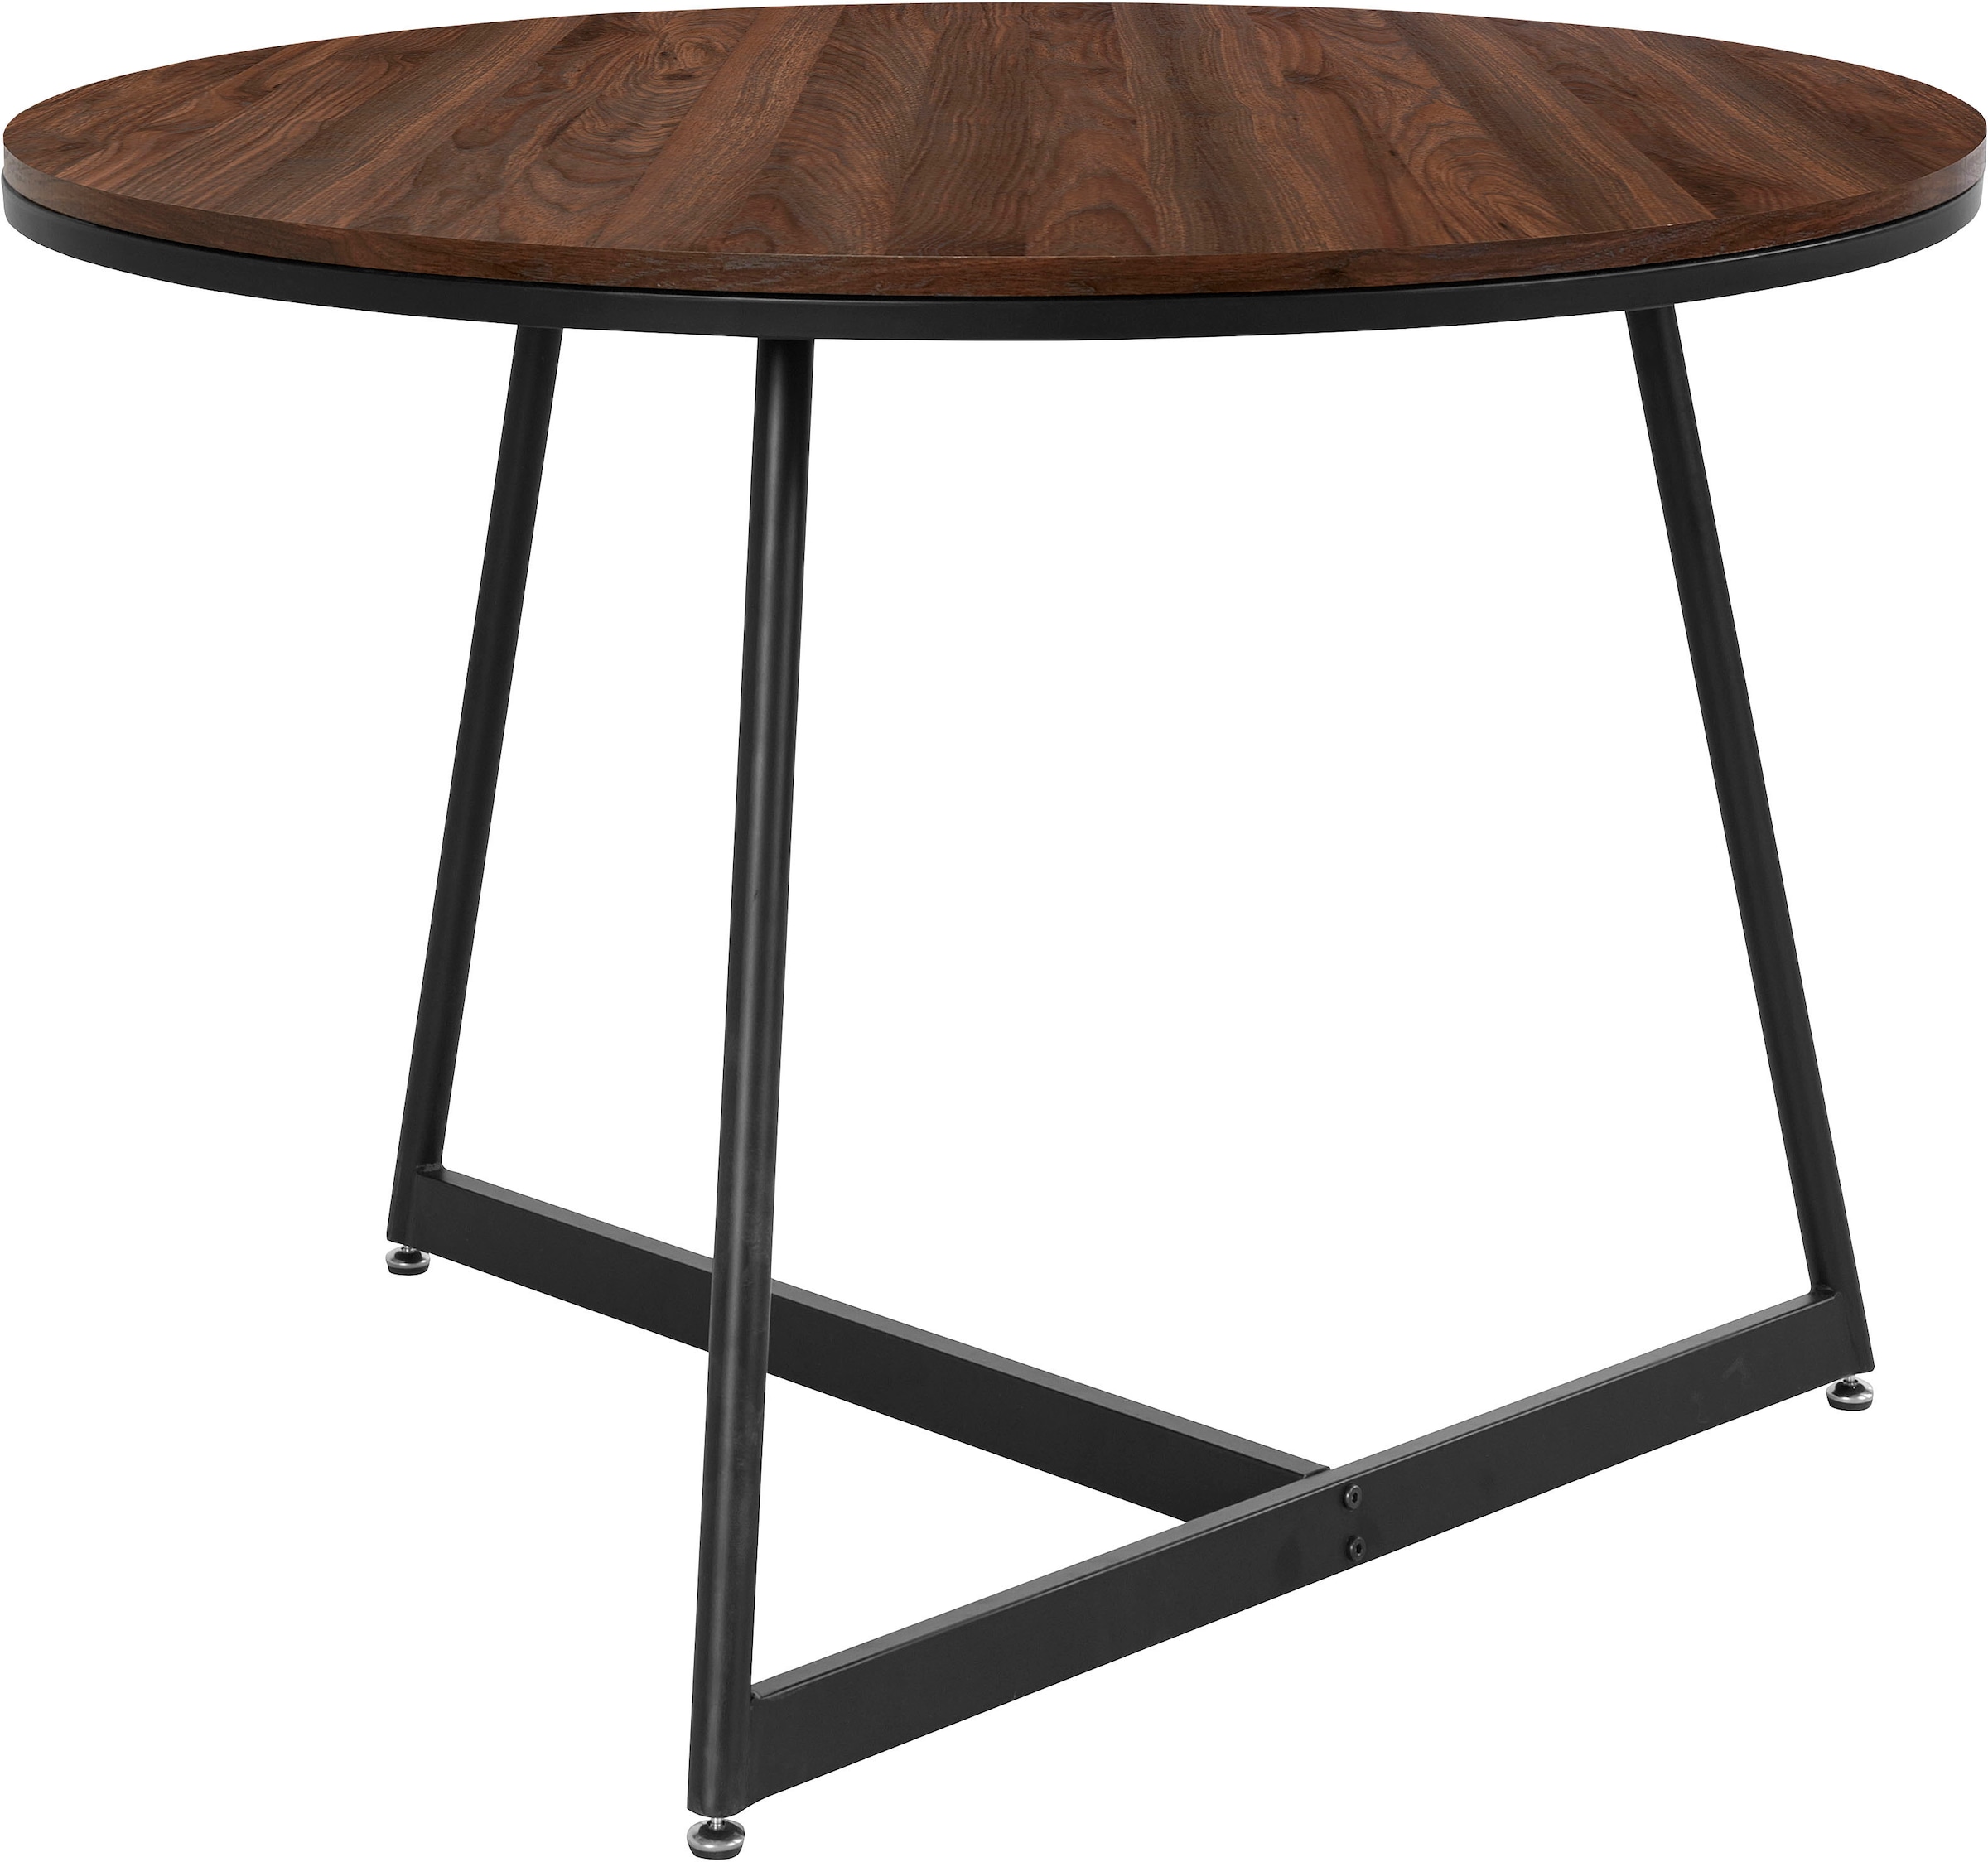 andas Esstisch »Adak«, (1 St.), mit Tischplatte in Walnußoptik mit fühlbare Struktur, Höhe 78 cm